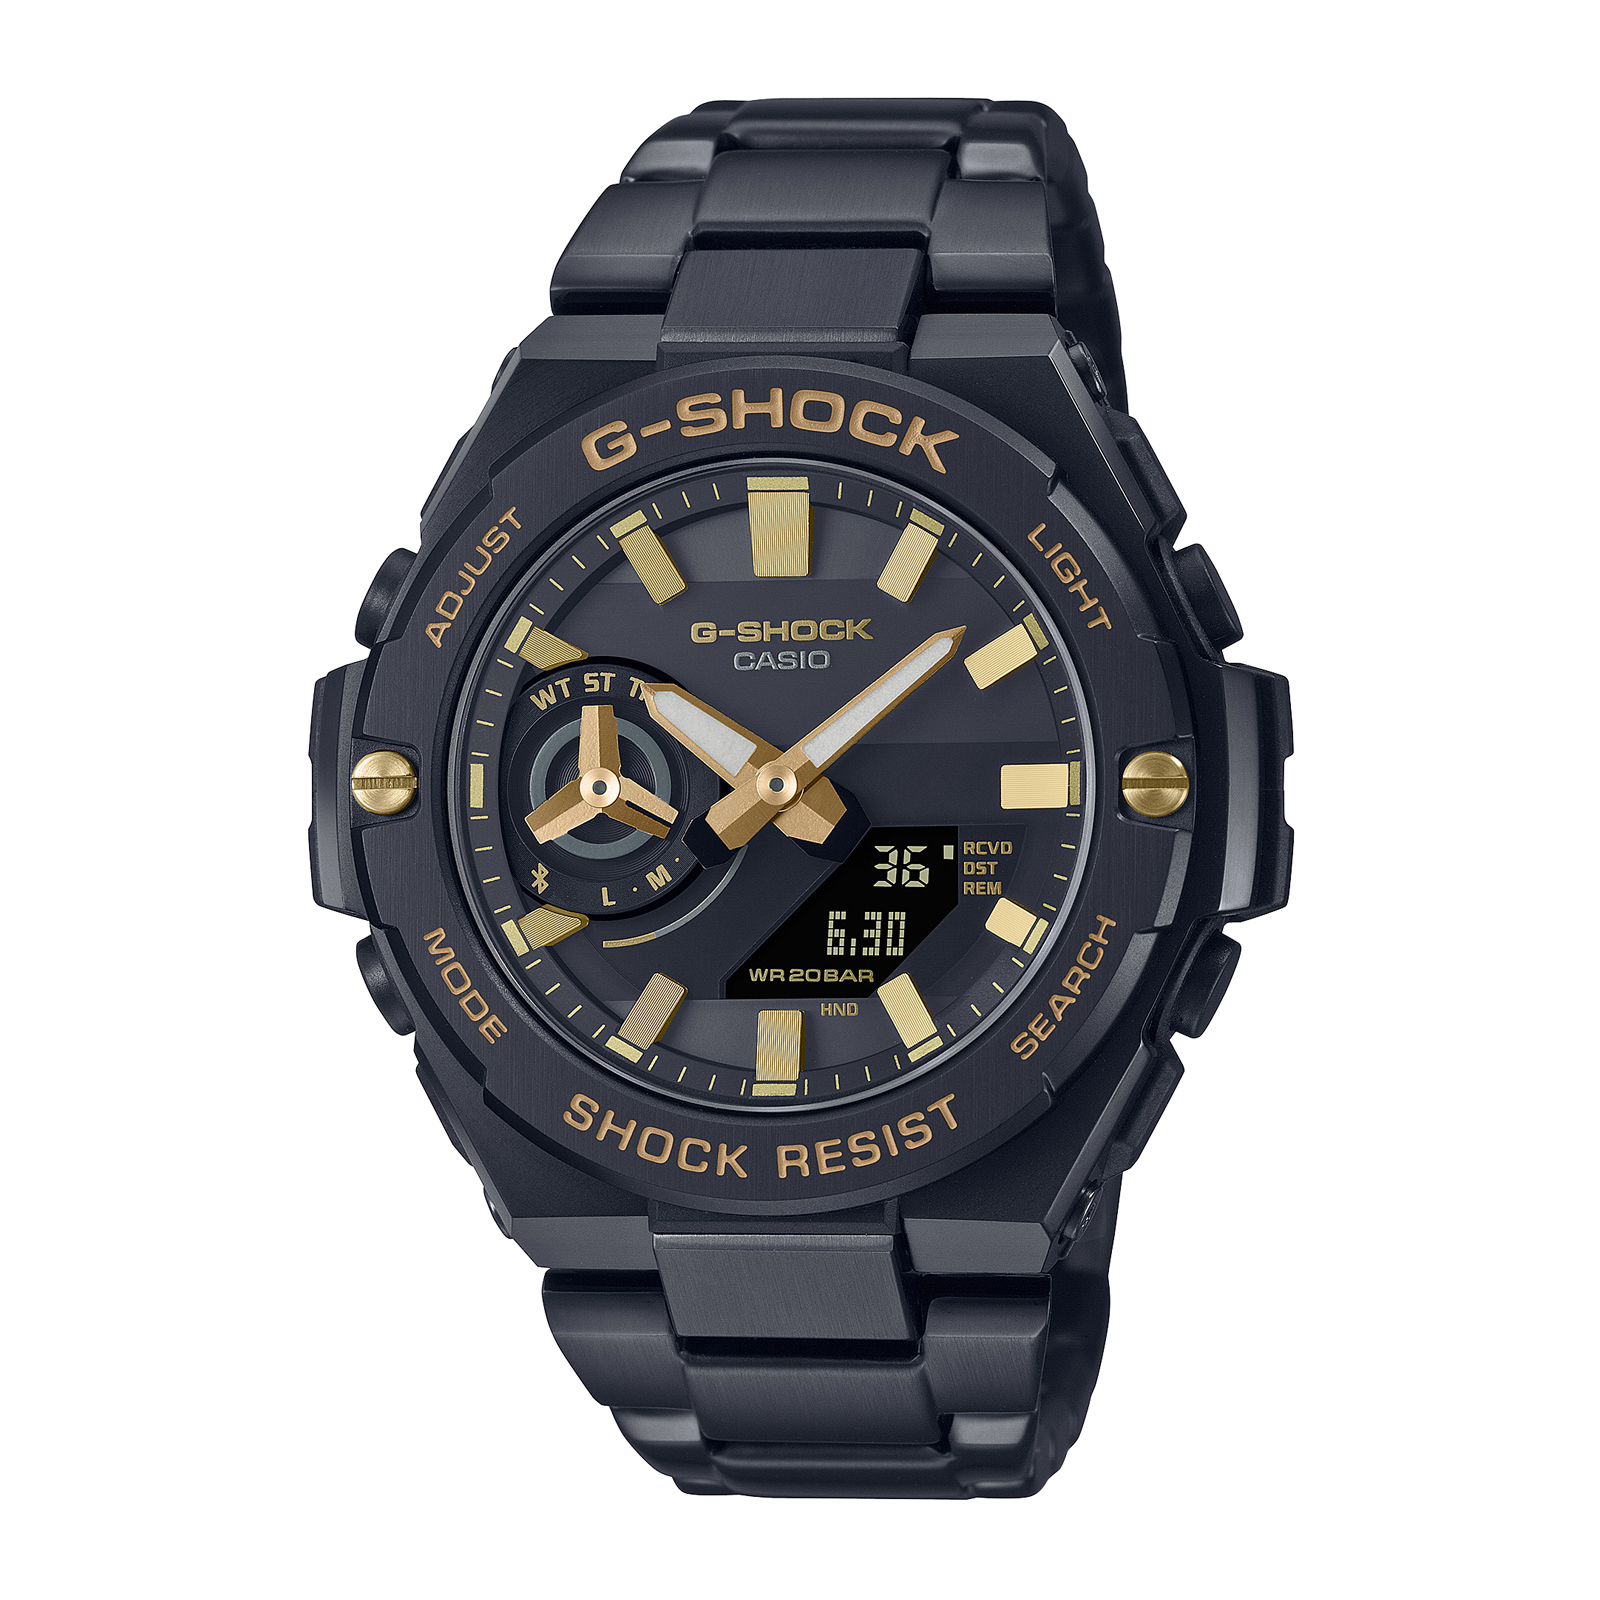 Reloj G-SHOCK GST-B500BD-1A9DR Resina/Acero Hombre Negro